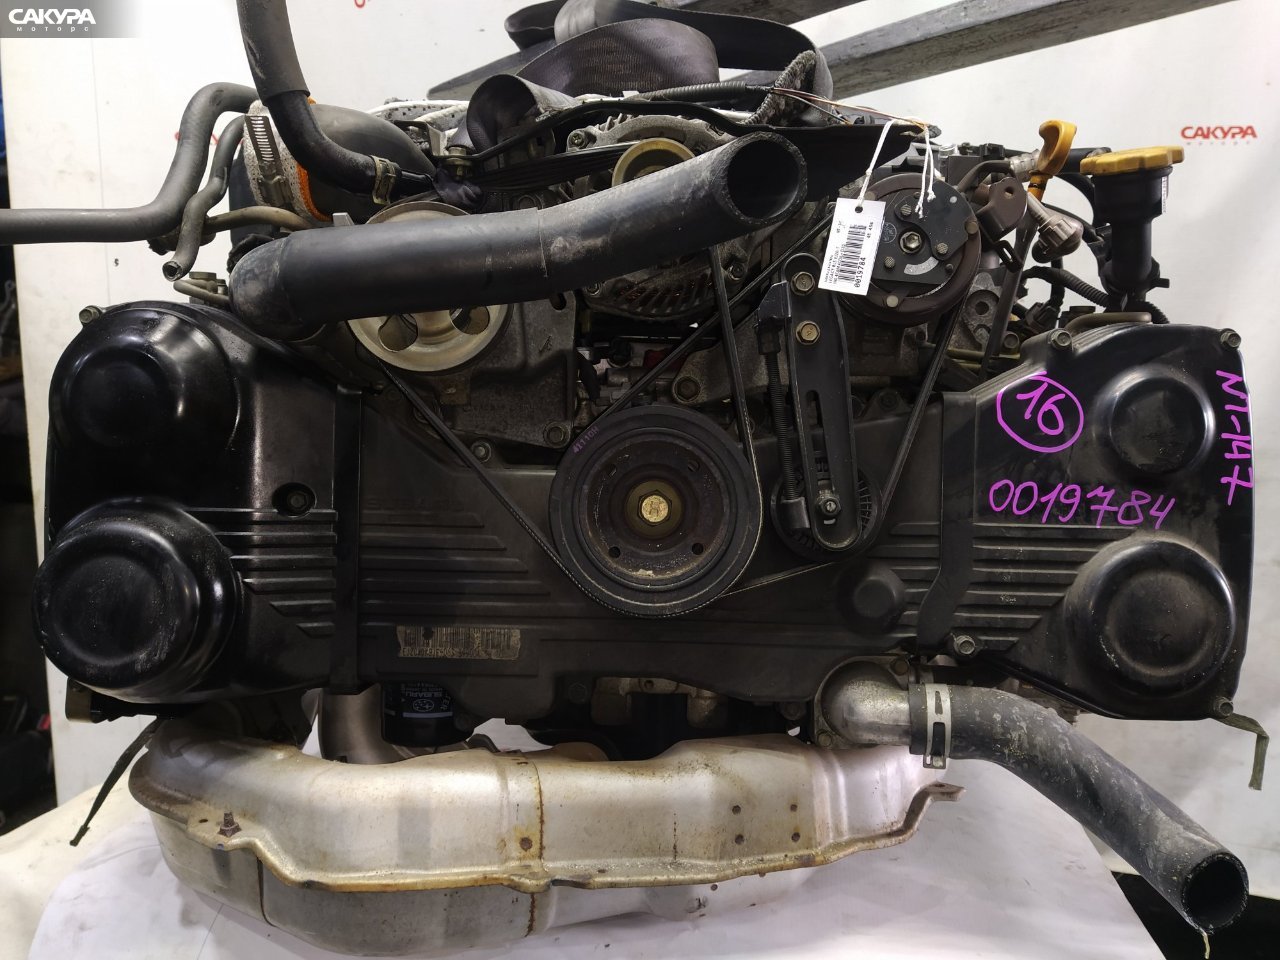 Двигатель Subaru Legacy BL5 EJ20X: купить в Сакура Красноярск.